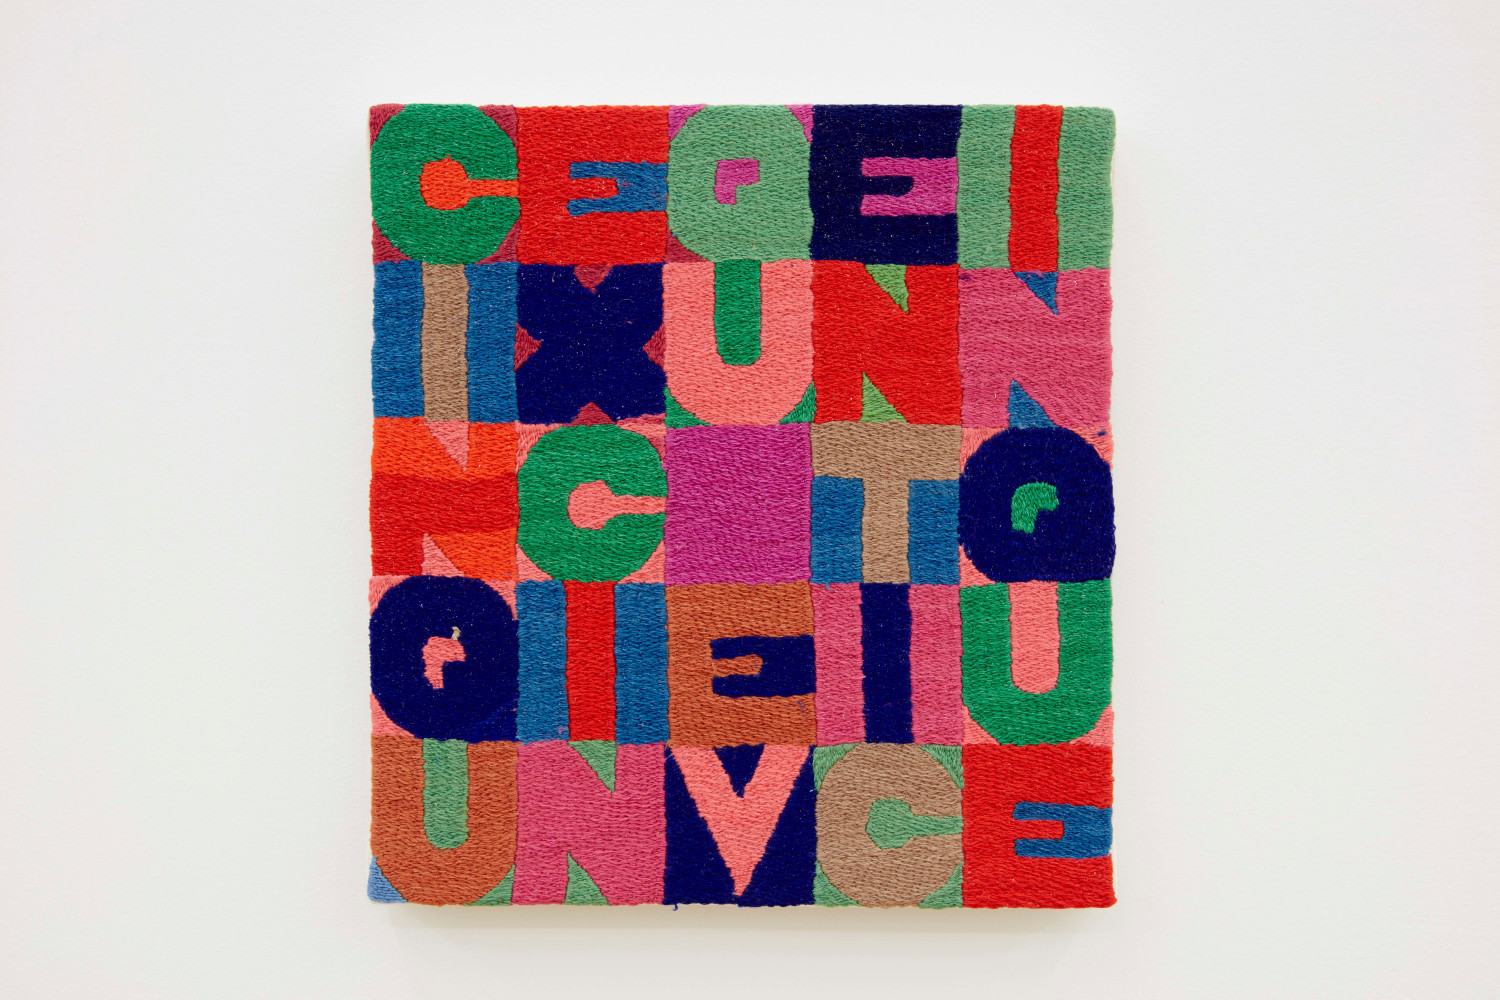 Alighiero e Boetti

Cinque x Cinque Venticinque, 1988

cotton thread embroidery on linen

8 3/4 x 8 1/4 inches (22.2 x 21 cm)